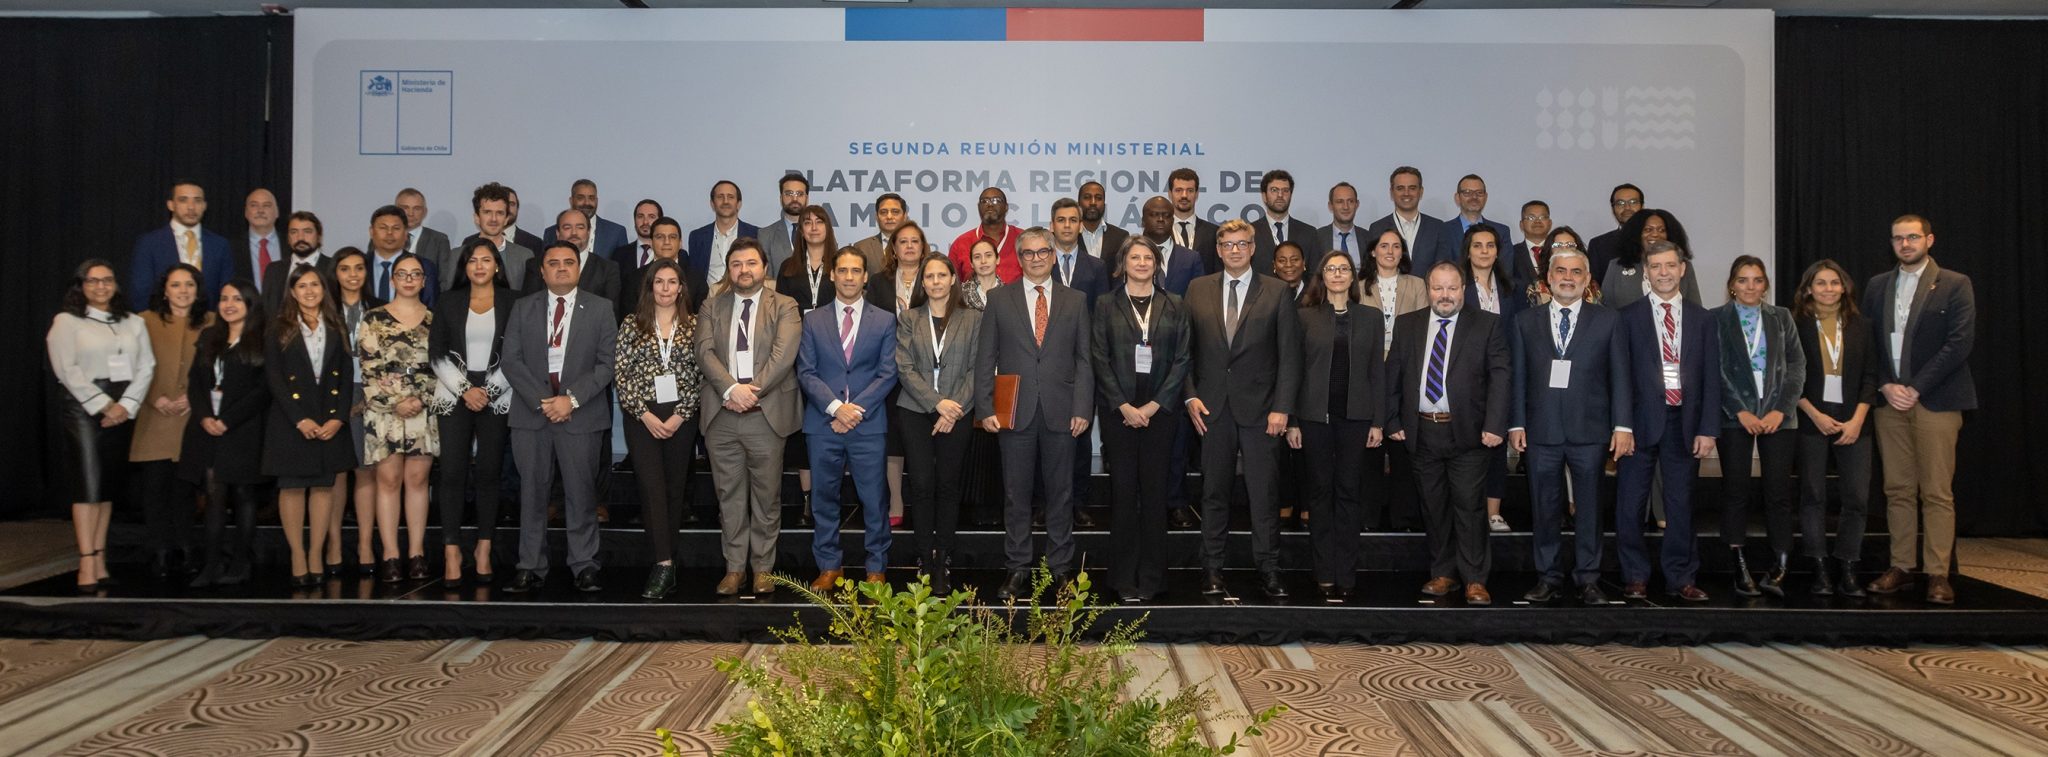 Chile recibe la presidencia de la Plataforma Regional de Cambio Climático de Ministerios de Hacienda, Economía y Finanzas de América Latina y el Caribe